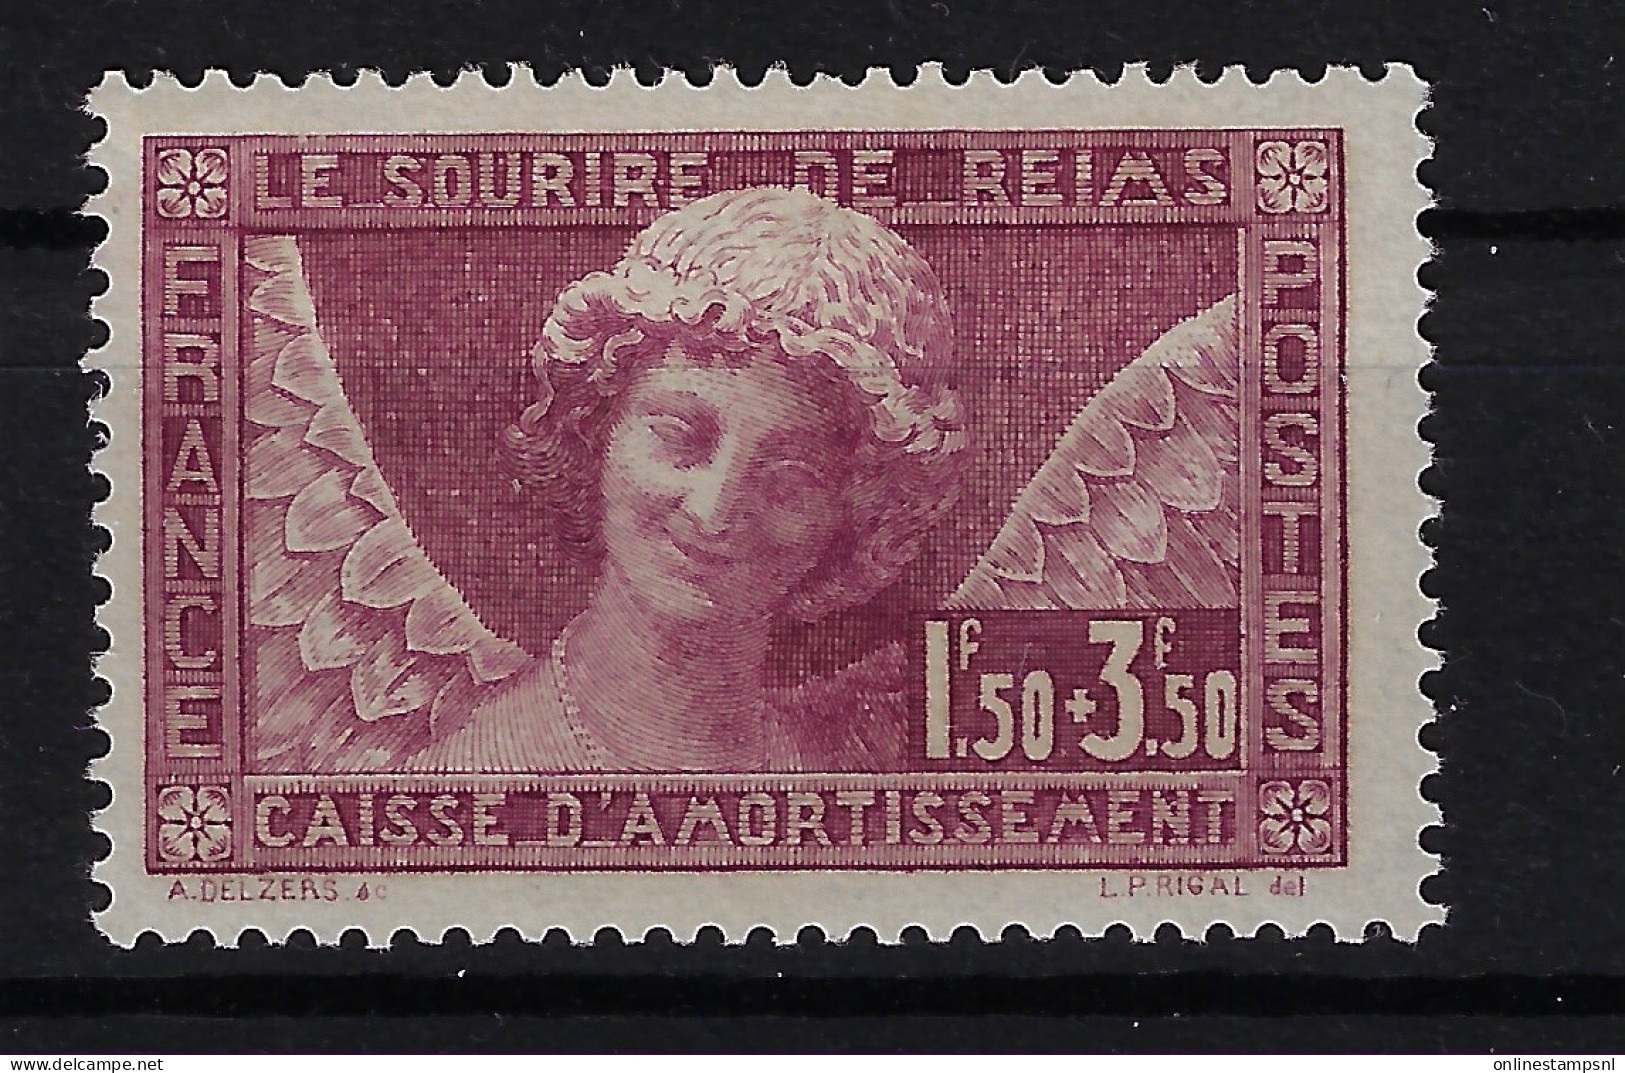 France Yv 256 1930 Neuf Avec ( Ou Trace De) Charniere / MH/* - 1927-31 Caisse D'Amortissement